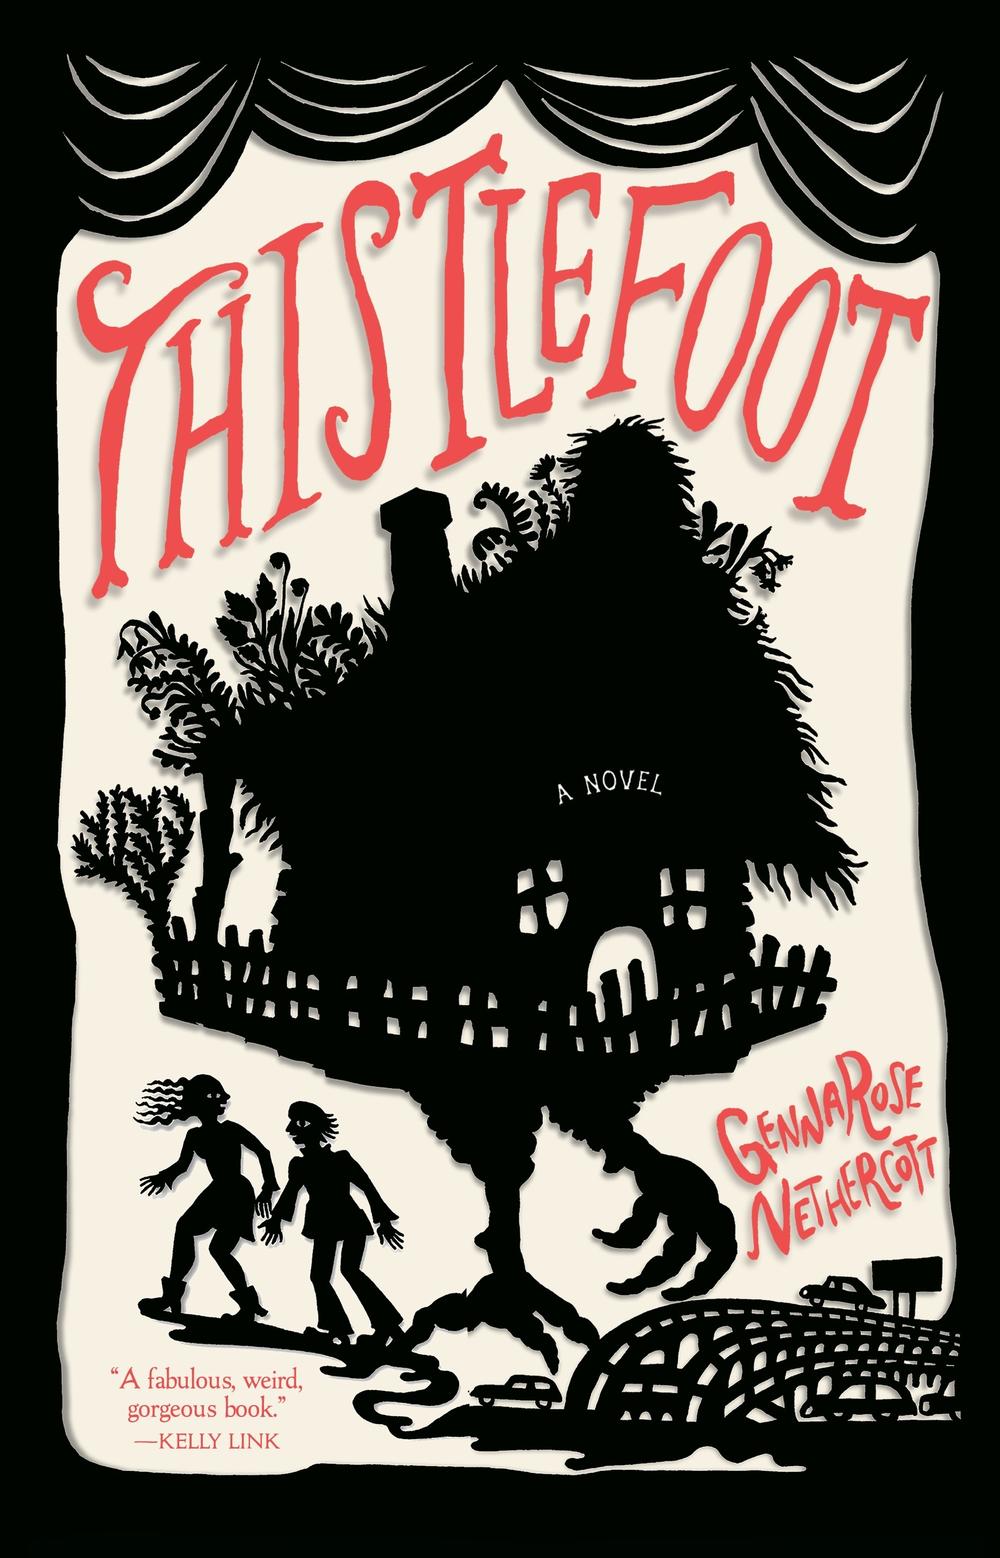 <em>Thistlefoot</em> is the debut novel by folklorist GennaRose Nethercott.